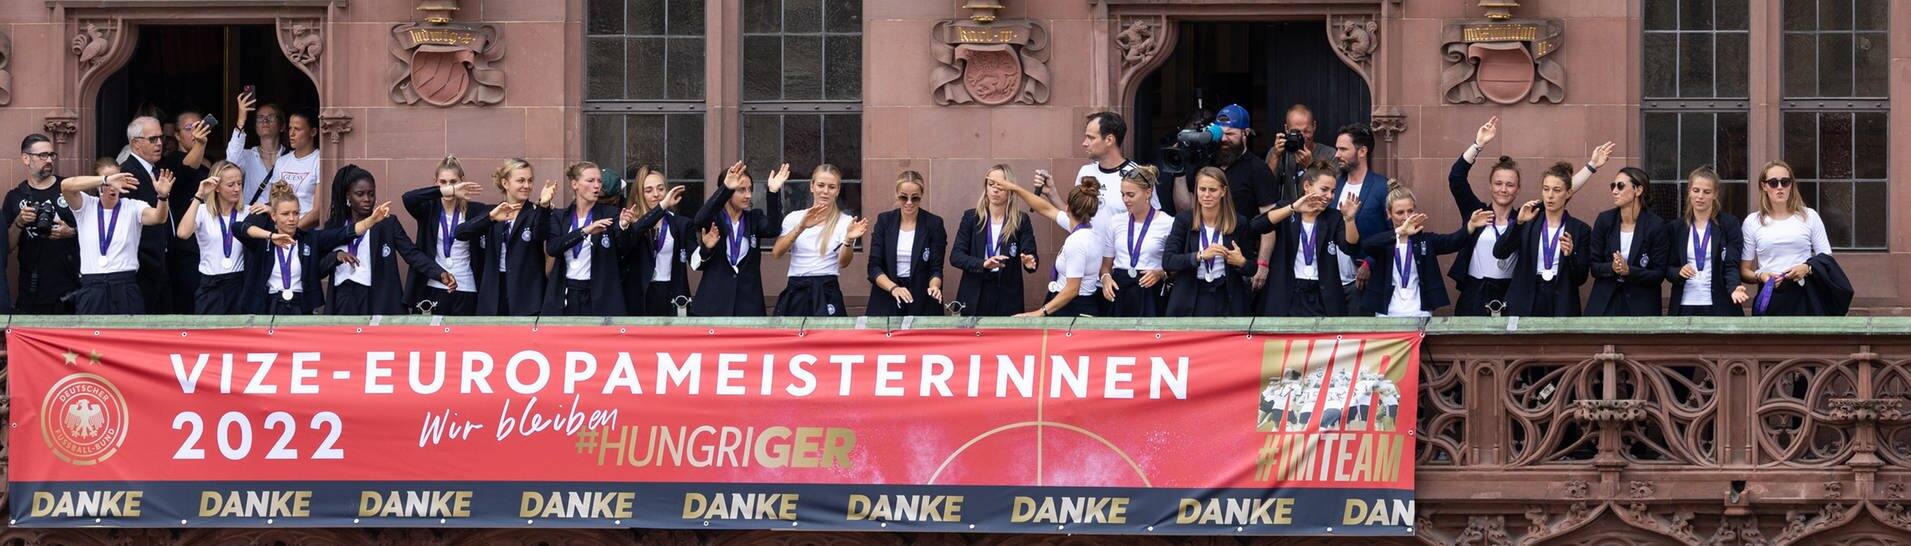 Die Fußballerinnen stehen auf dem Rathausbalkon, davor ein Banner "Vize-Europameisterinnen" (Foto: dpa Bildfunk, picture alliance/dpa | Hannes P Albert)